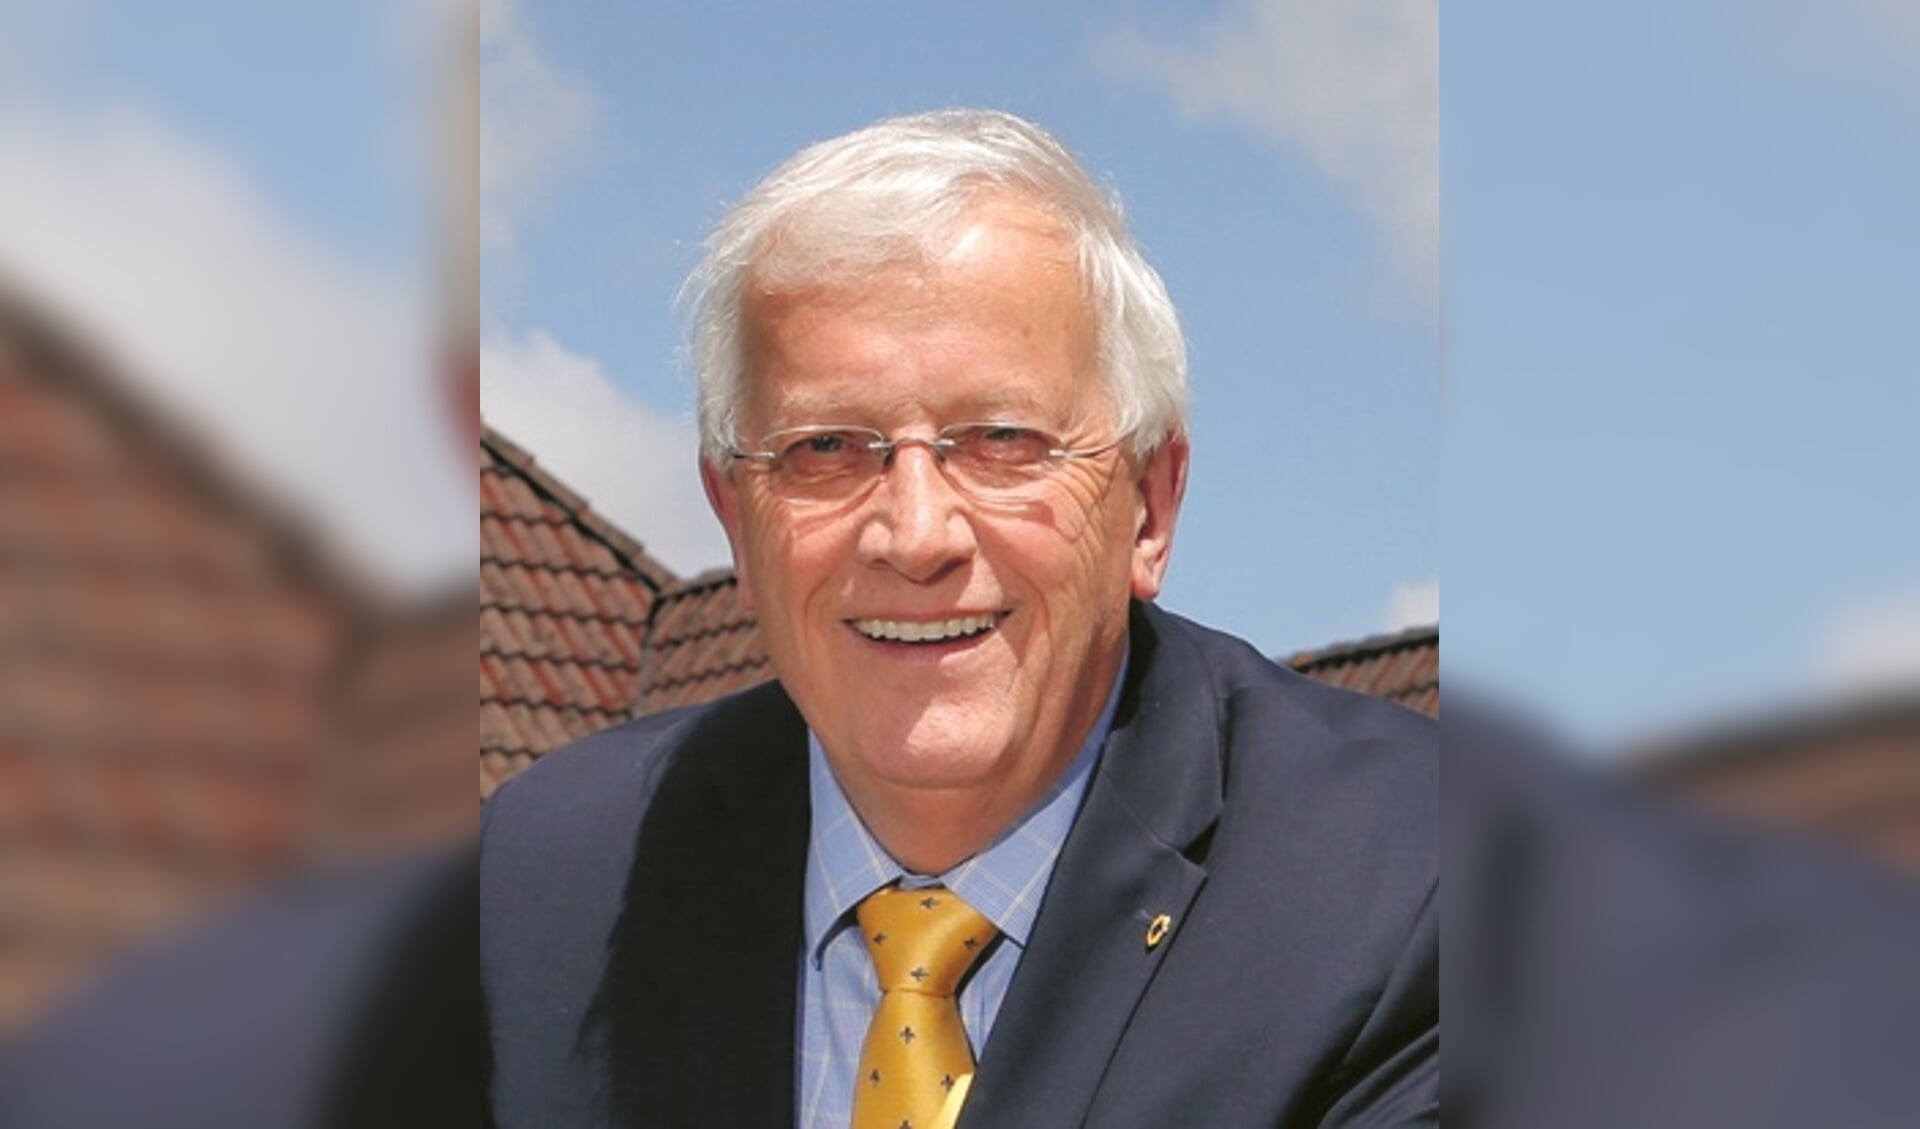 Burgemeester Nijpels van gemeente Opmeer: 